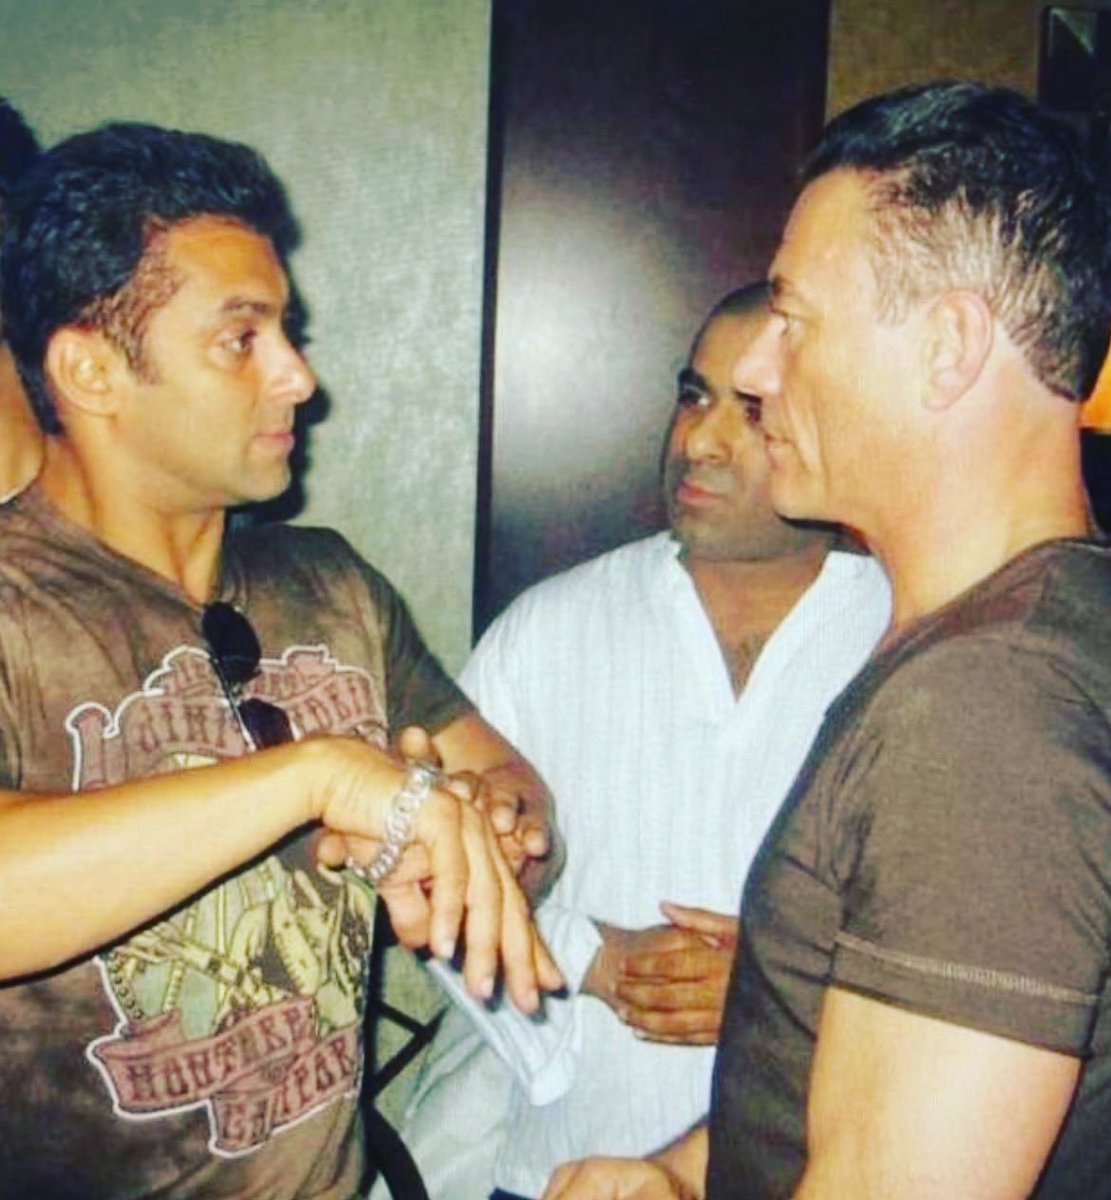 legends talking, the conversation was about training 

#SalmanKhan #jeanclaudevandamme